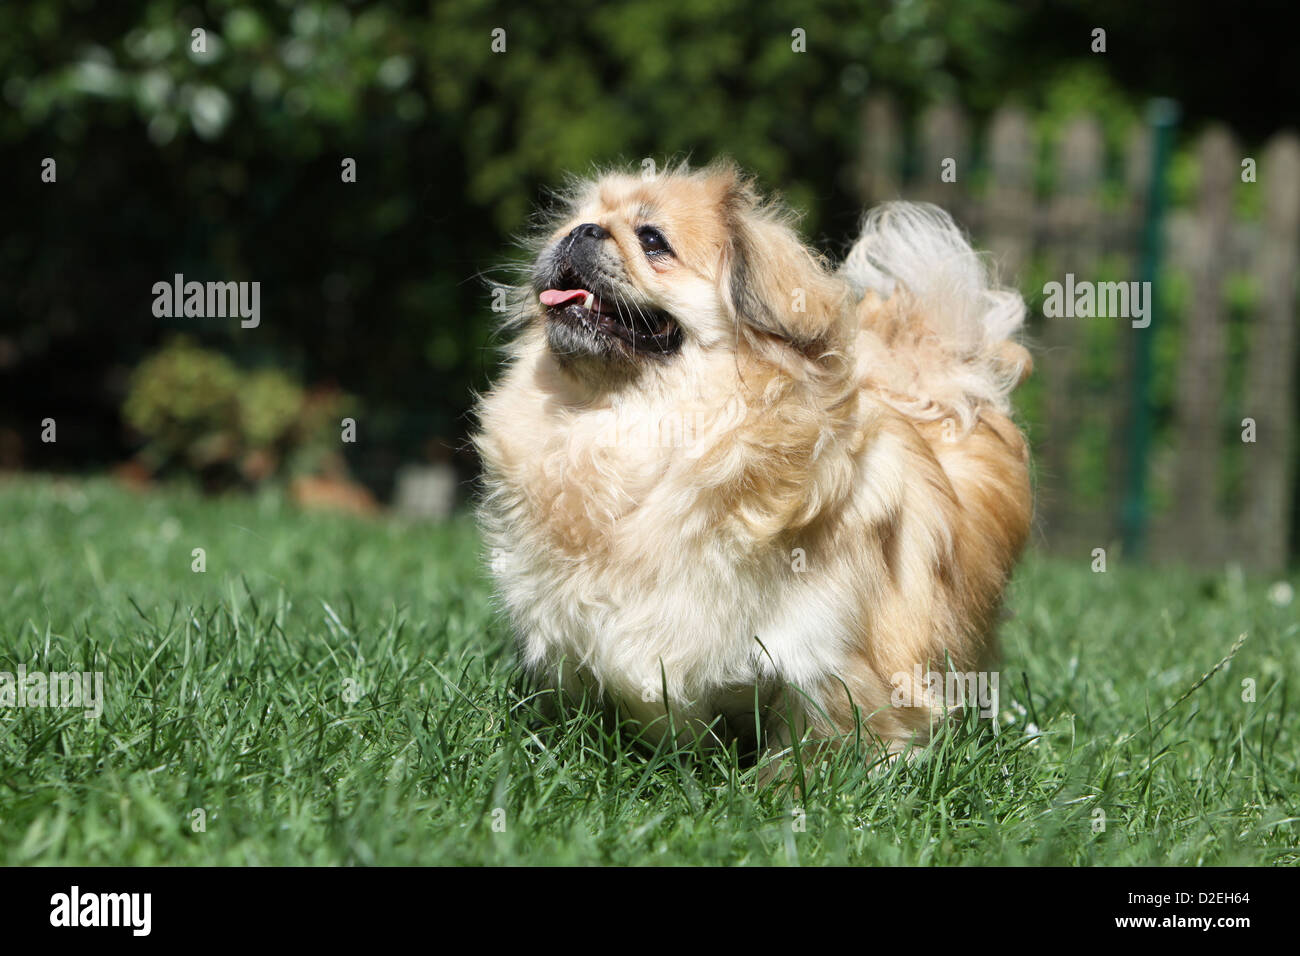 Dog Pekingese / Pekinese / Pékinois adult standing in a garden Stock Photo